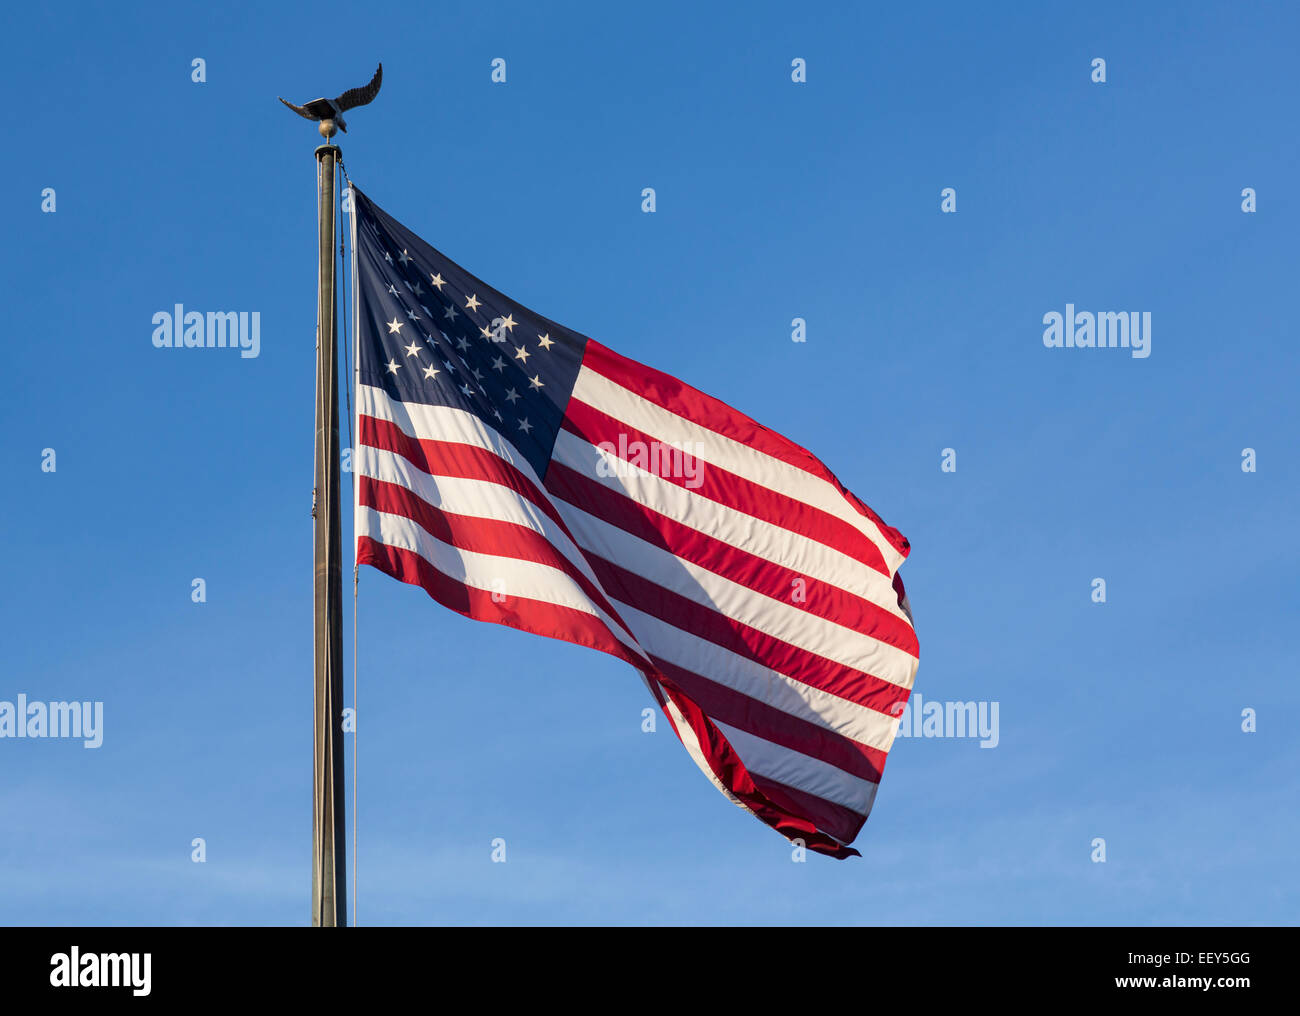 USA-Flagge von Sternen und Streifen mit Adler Fahnenmast gegen blauen Himmel Stockfoto